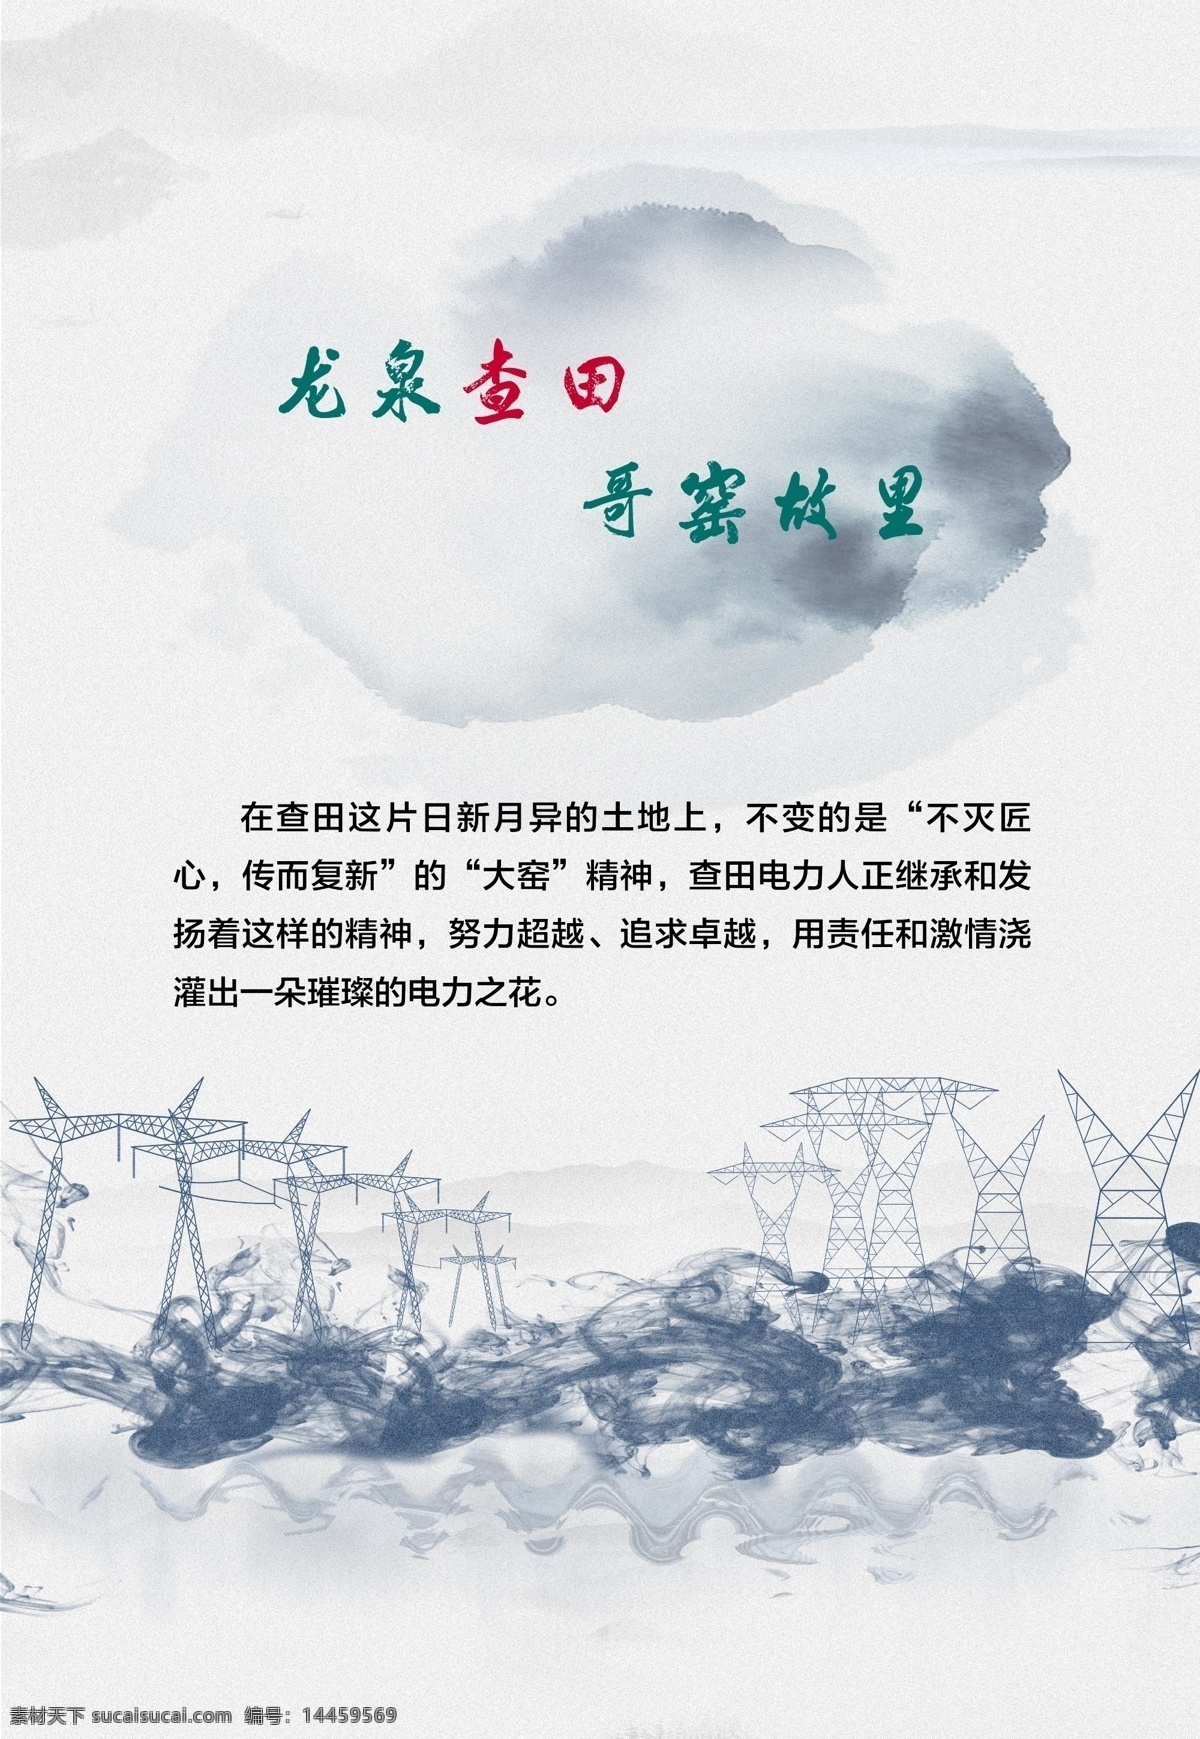 中国风海报 中国风 海报 水墨 电网 电力